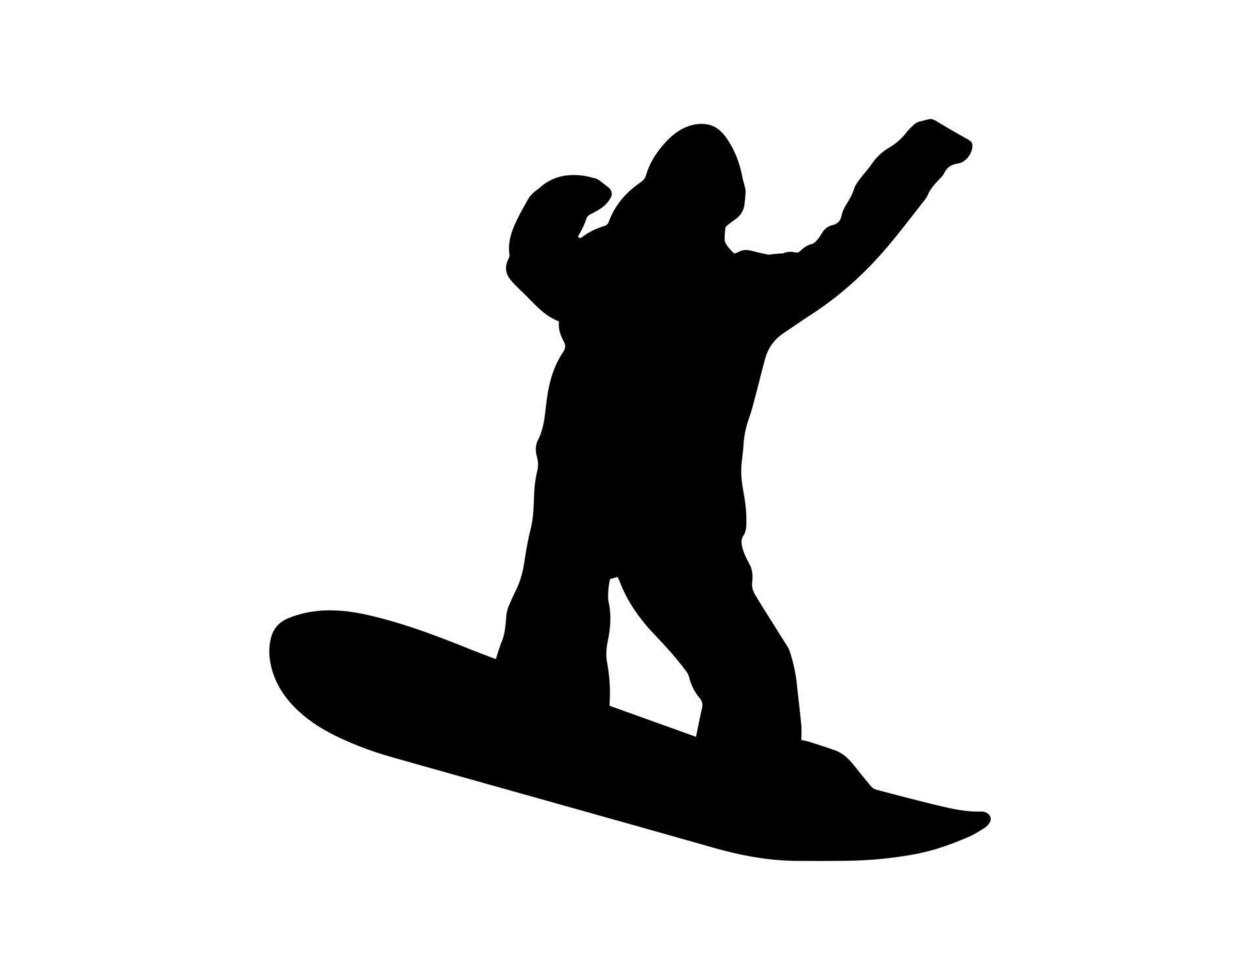 Vektor einfache Person auf Snowboard Silhouette Schattenform, flaches schwarzes Symbol isoliert auf weißem Hintergrund. Logo-Emblem-Designelement. Wintersport Spiel und Freizeitbeschäftigung.